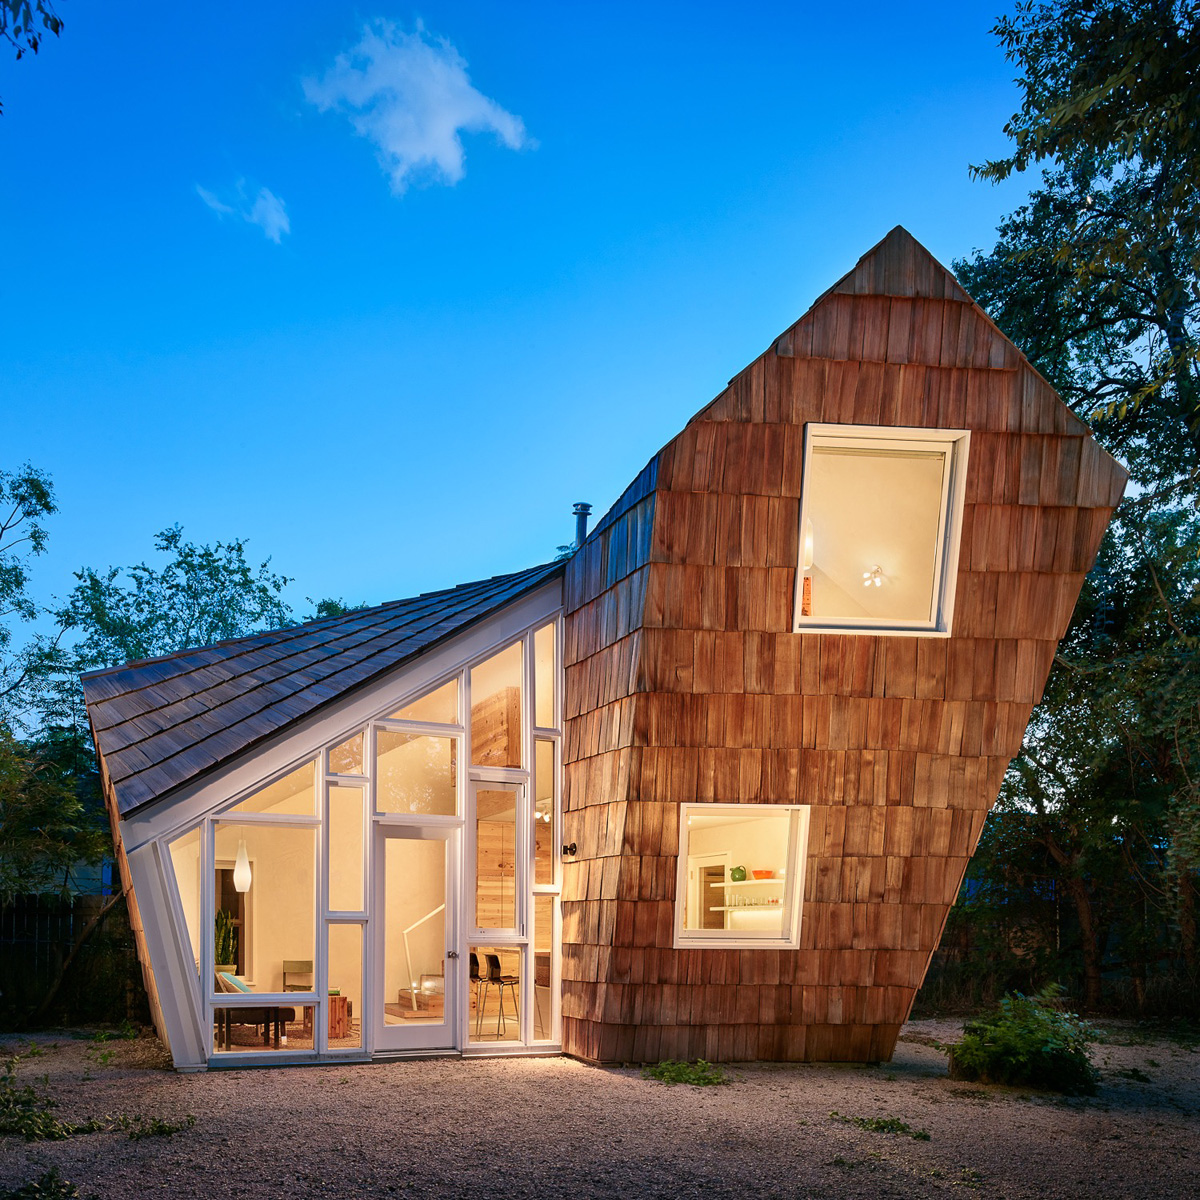 نگاهی به طراحی خانه چوبی Cedar Shake در تگزاس